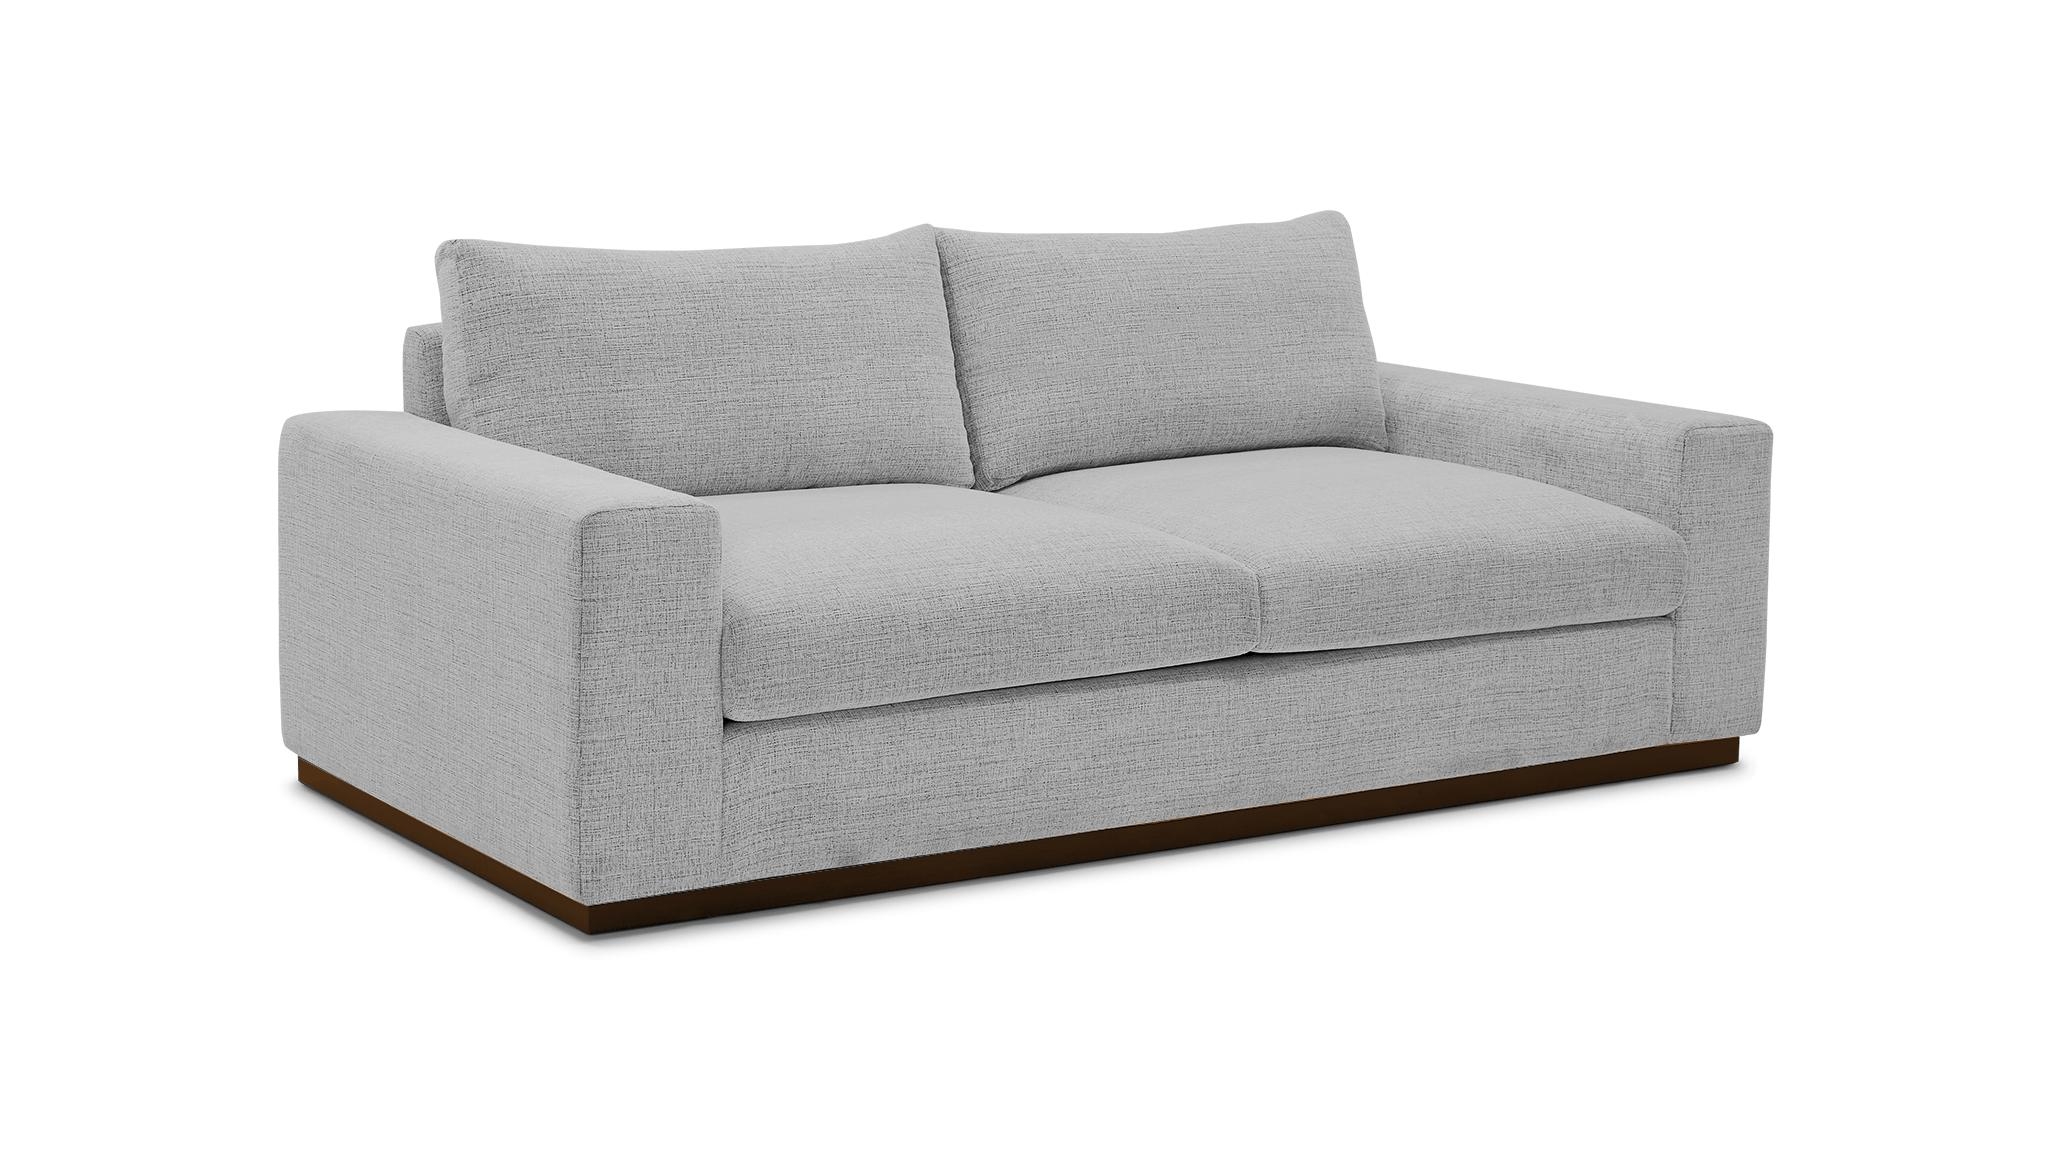 Gray Holt Mid Century Modern Sofa - Milo Dove - Mocha - Image 1